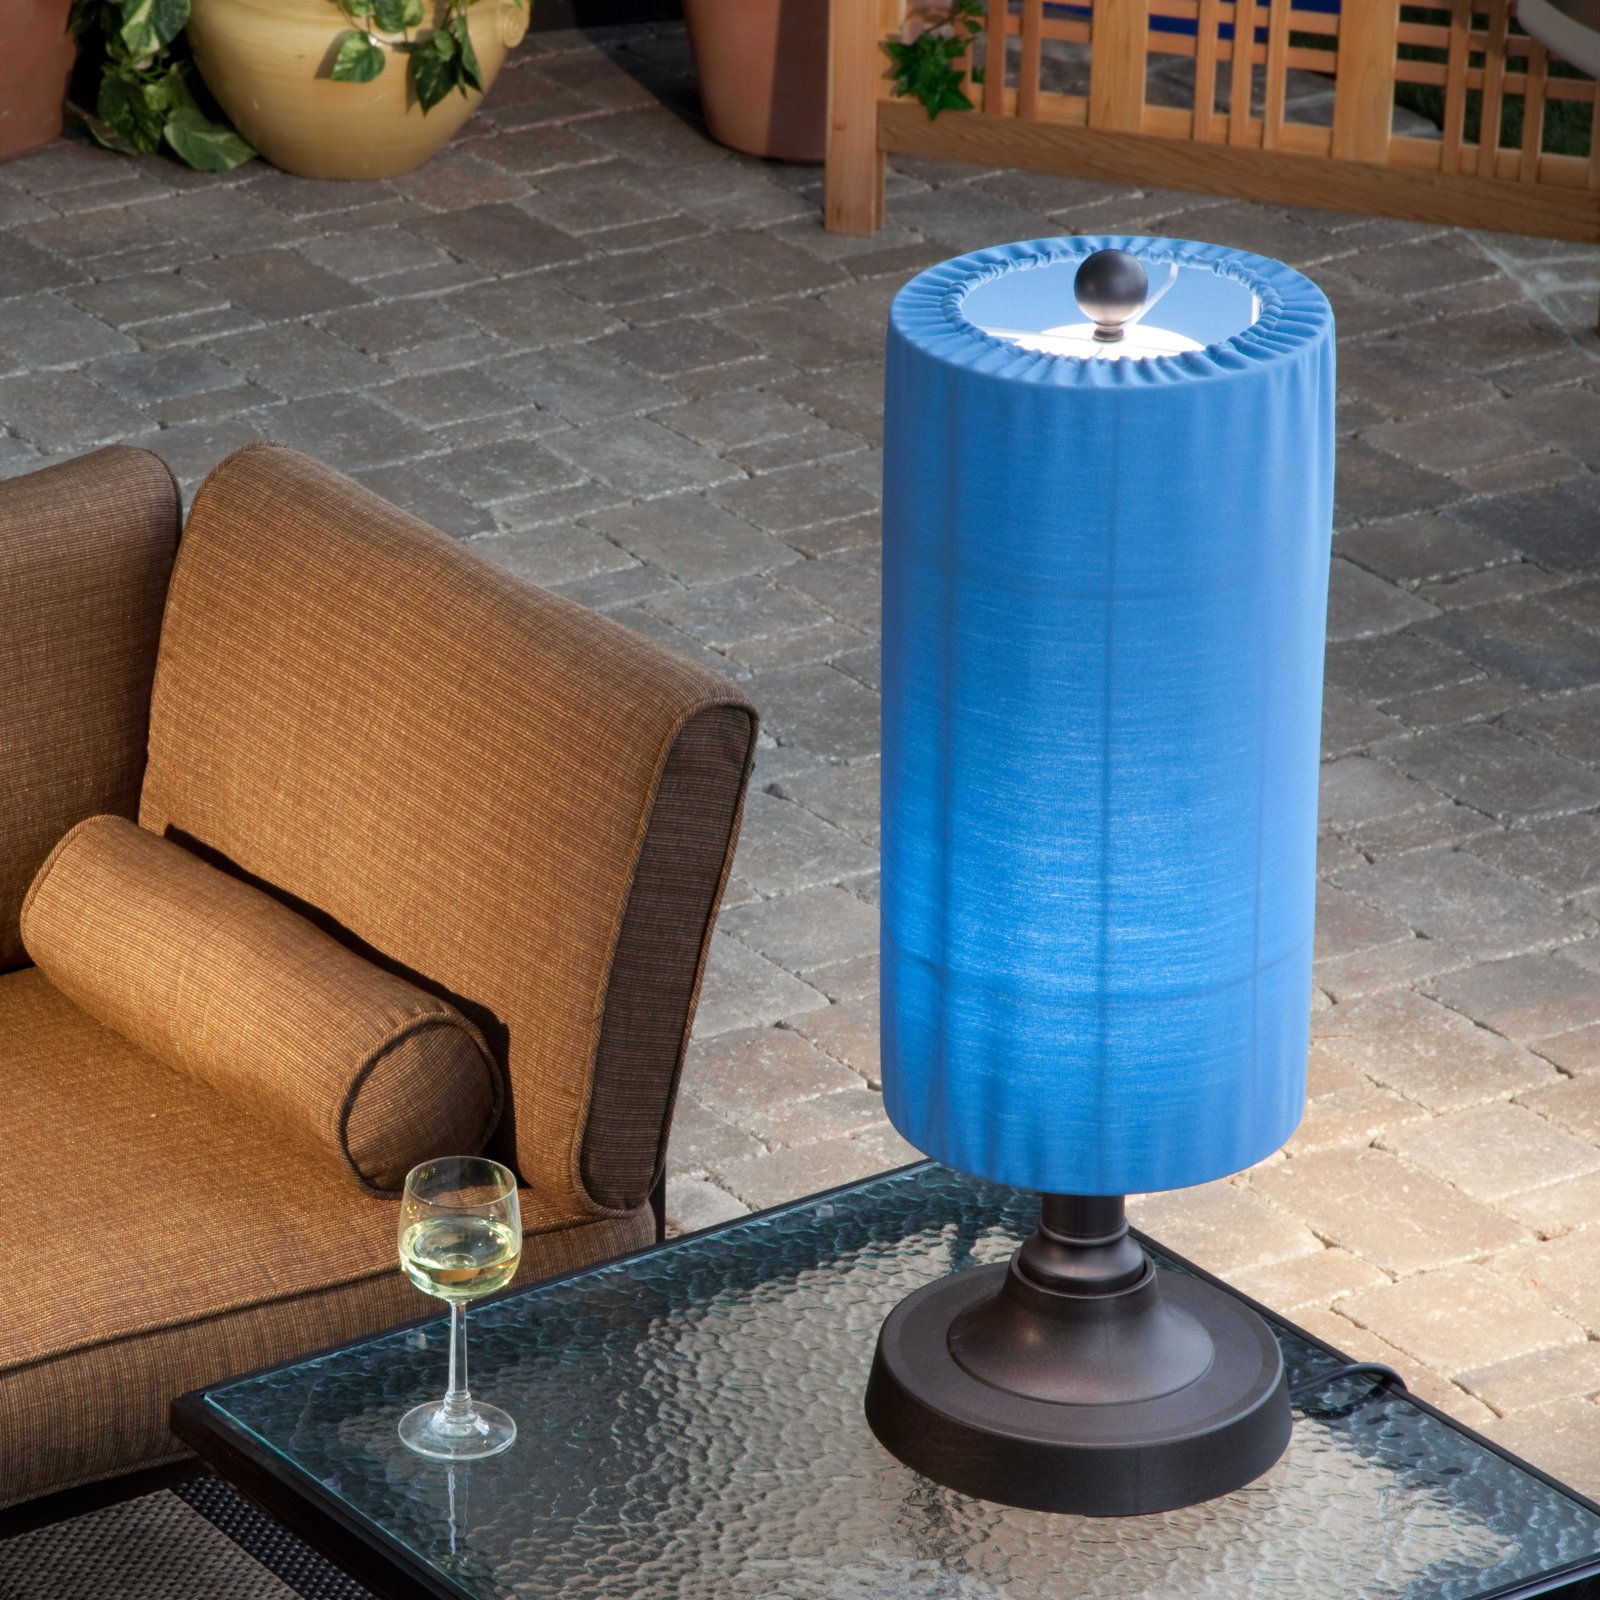 Coronado Outdoor Patio Table Lamp - image 1 of 5